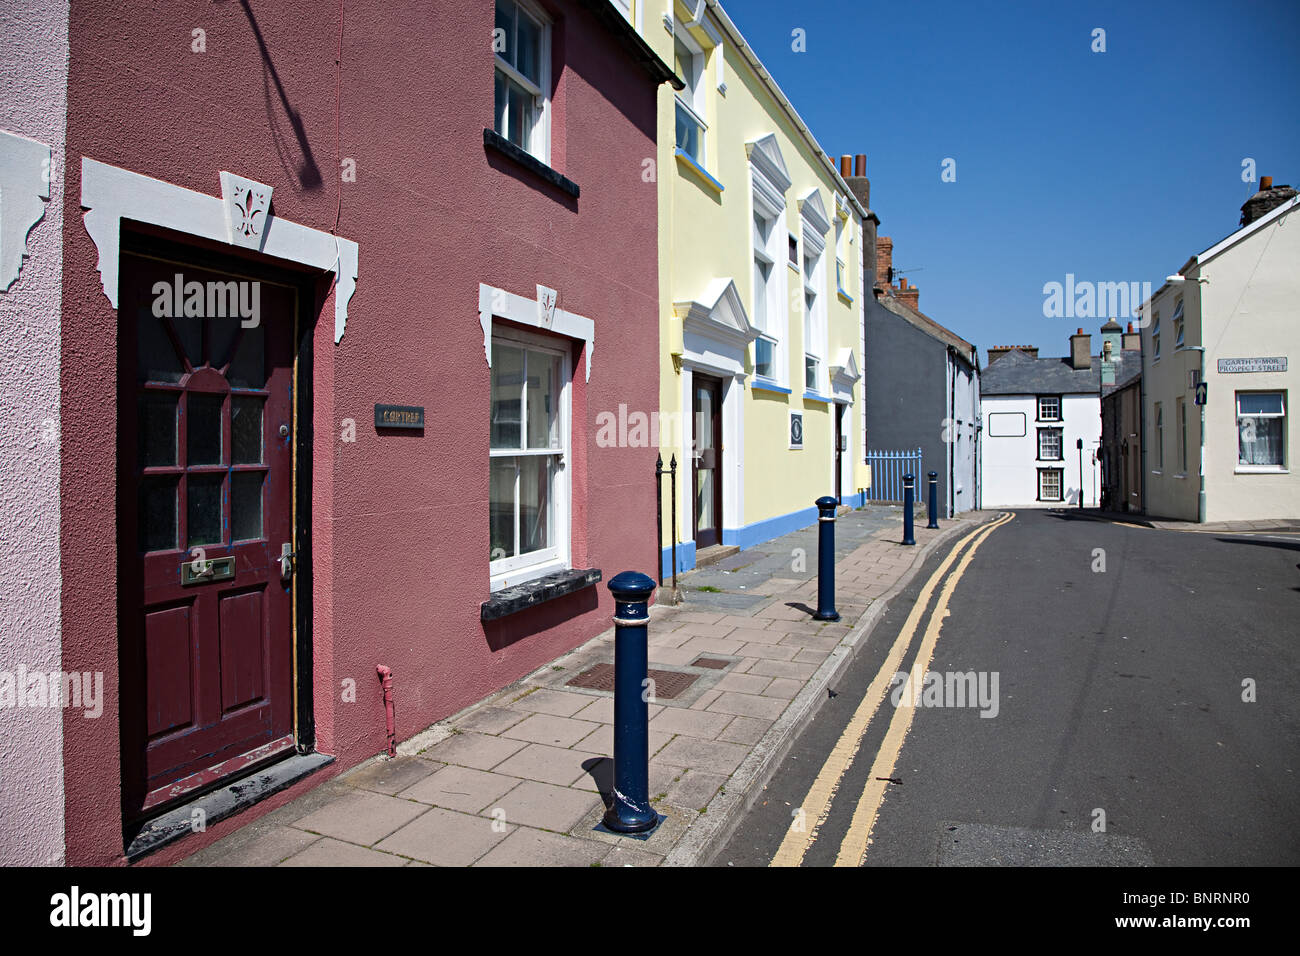 Rue calme dans la ville avec des bornes et aucune ligne jaune parking Aberystwyth Wales UK Banque D'Images